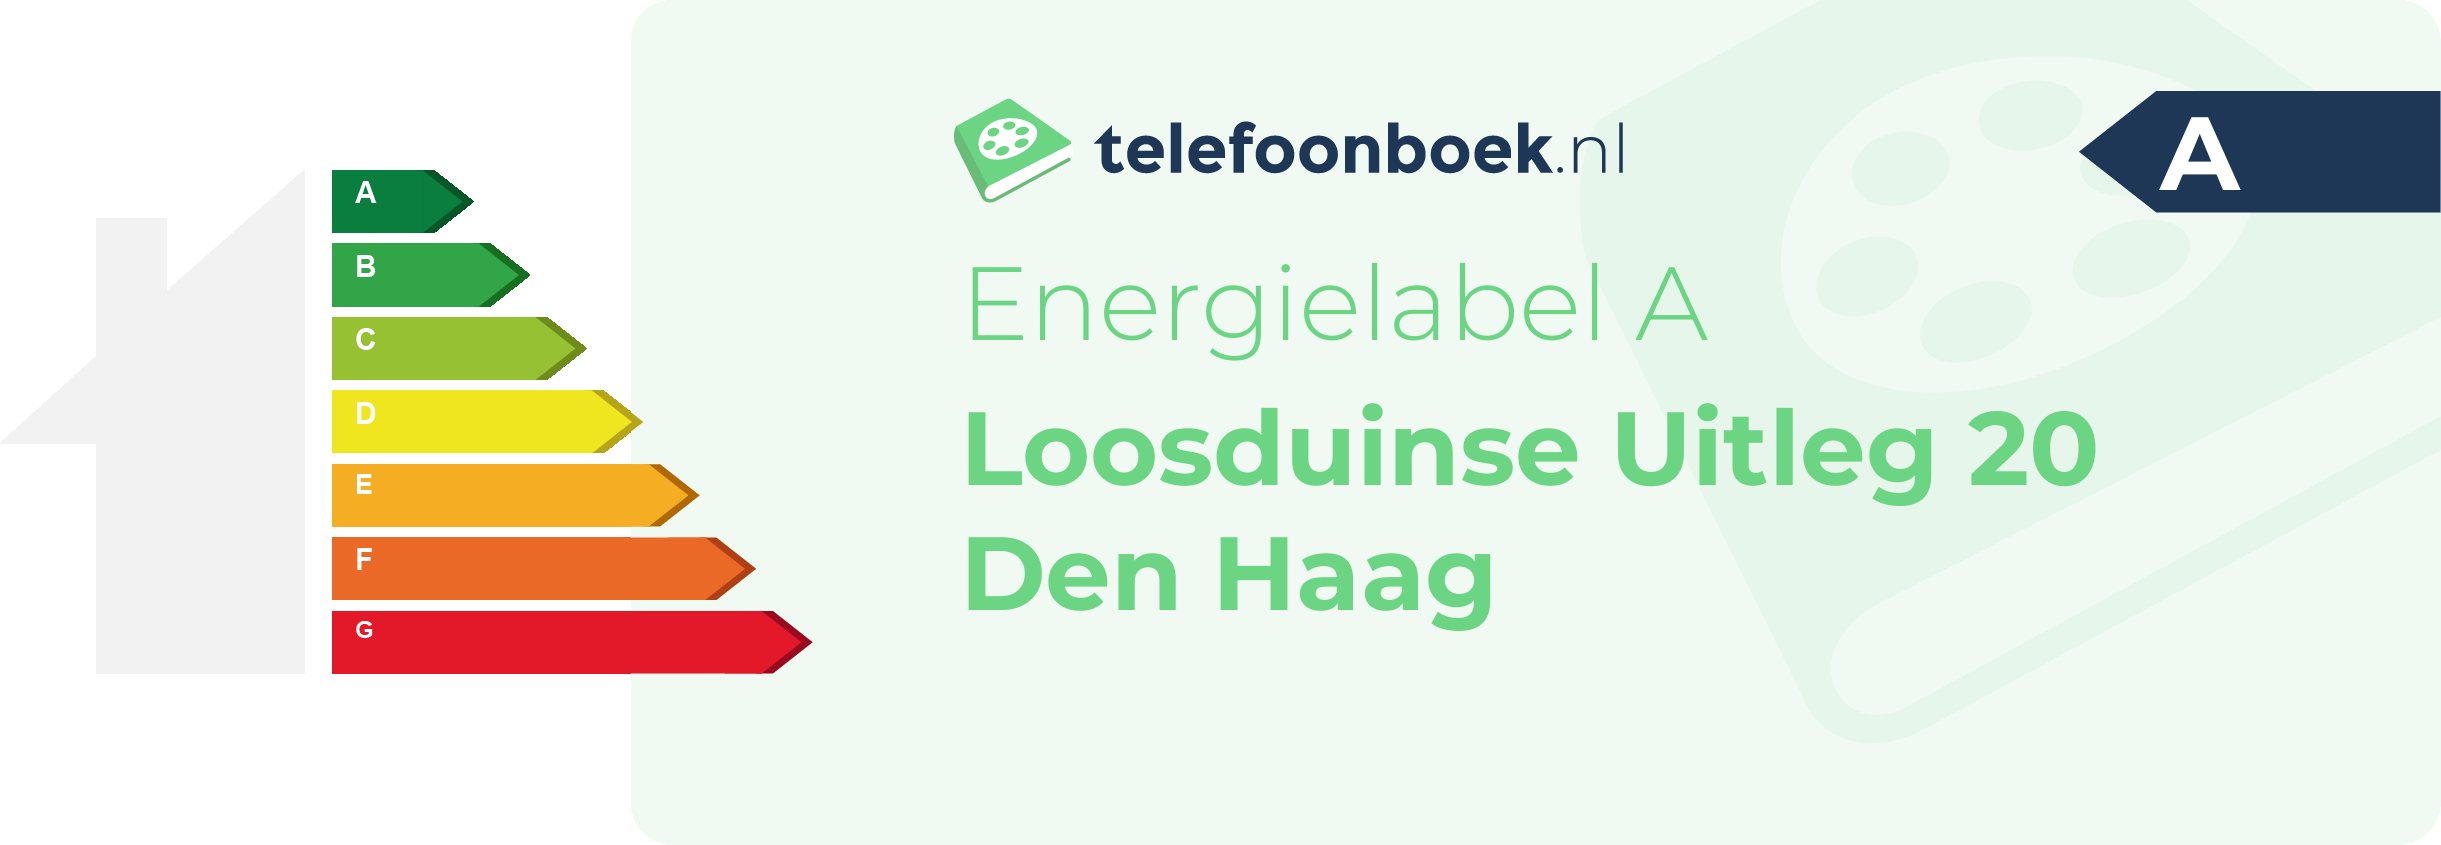 Energielabel Loosduinse Uitleg 20 Den Haag